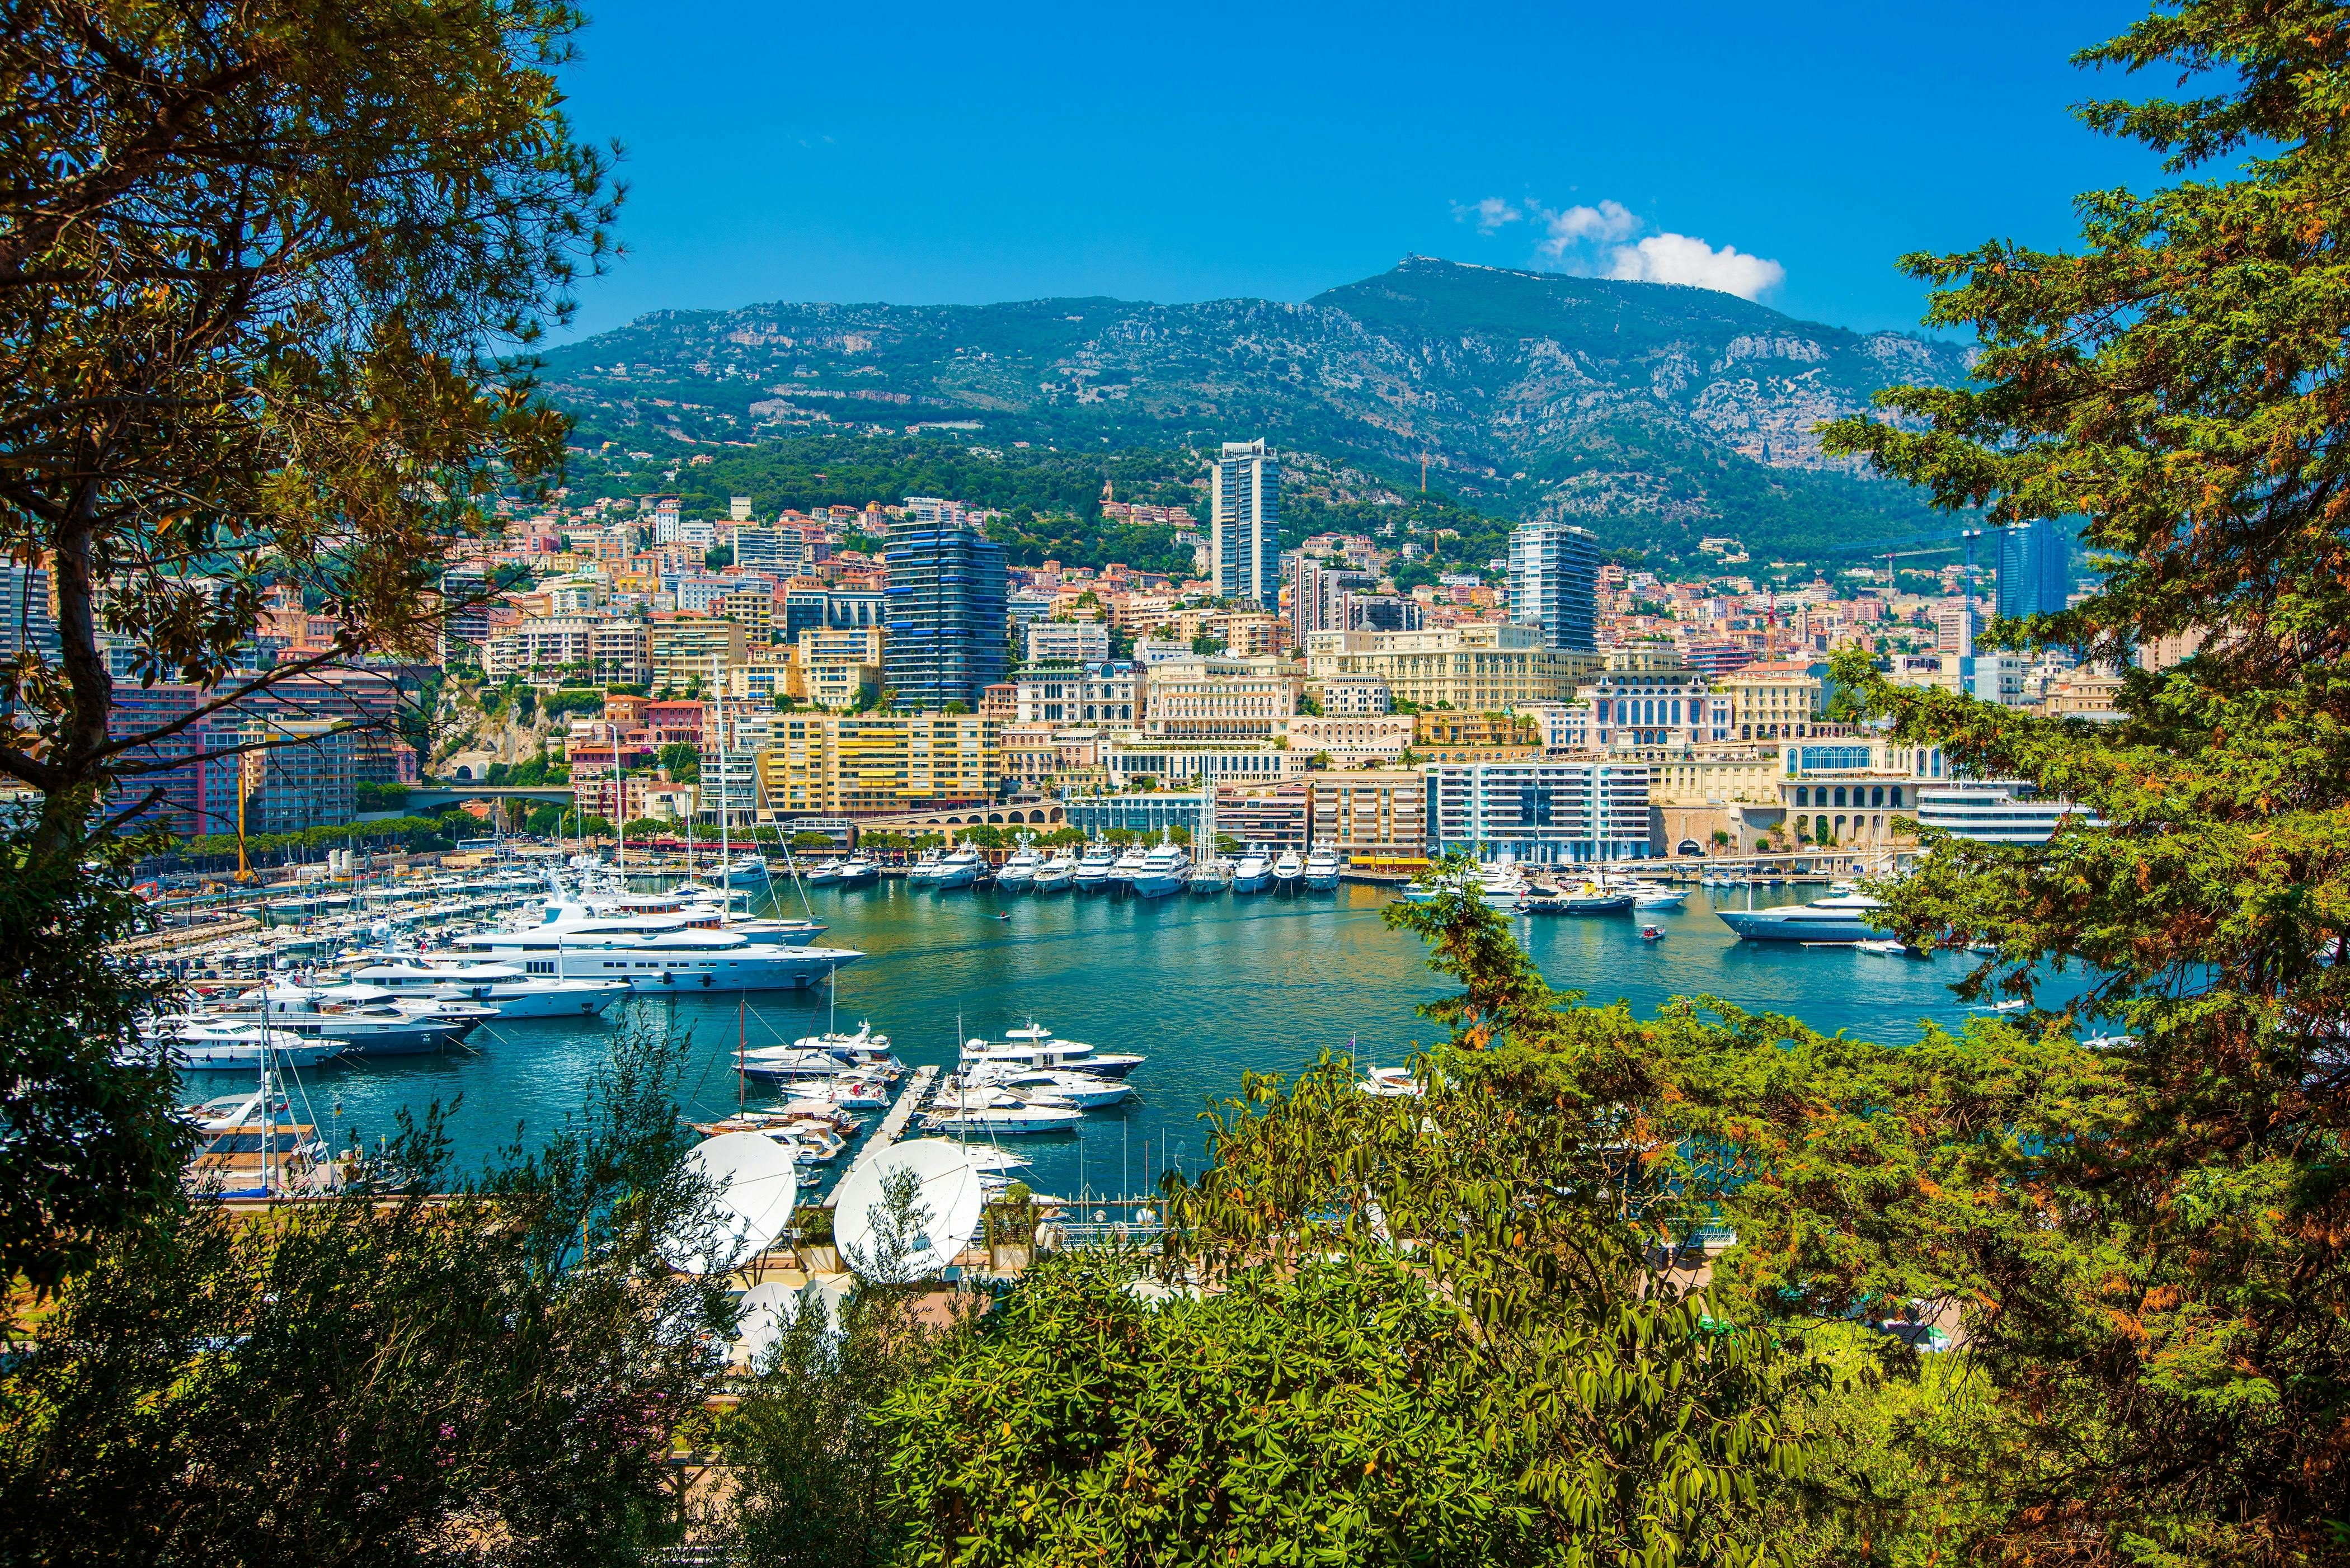 Excursão em grupo de meio dia em Eze, Mônaco e Monte Carlo saindo de Nice